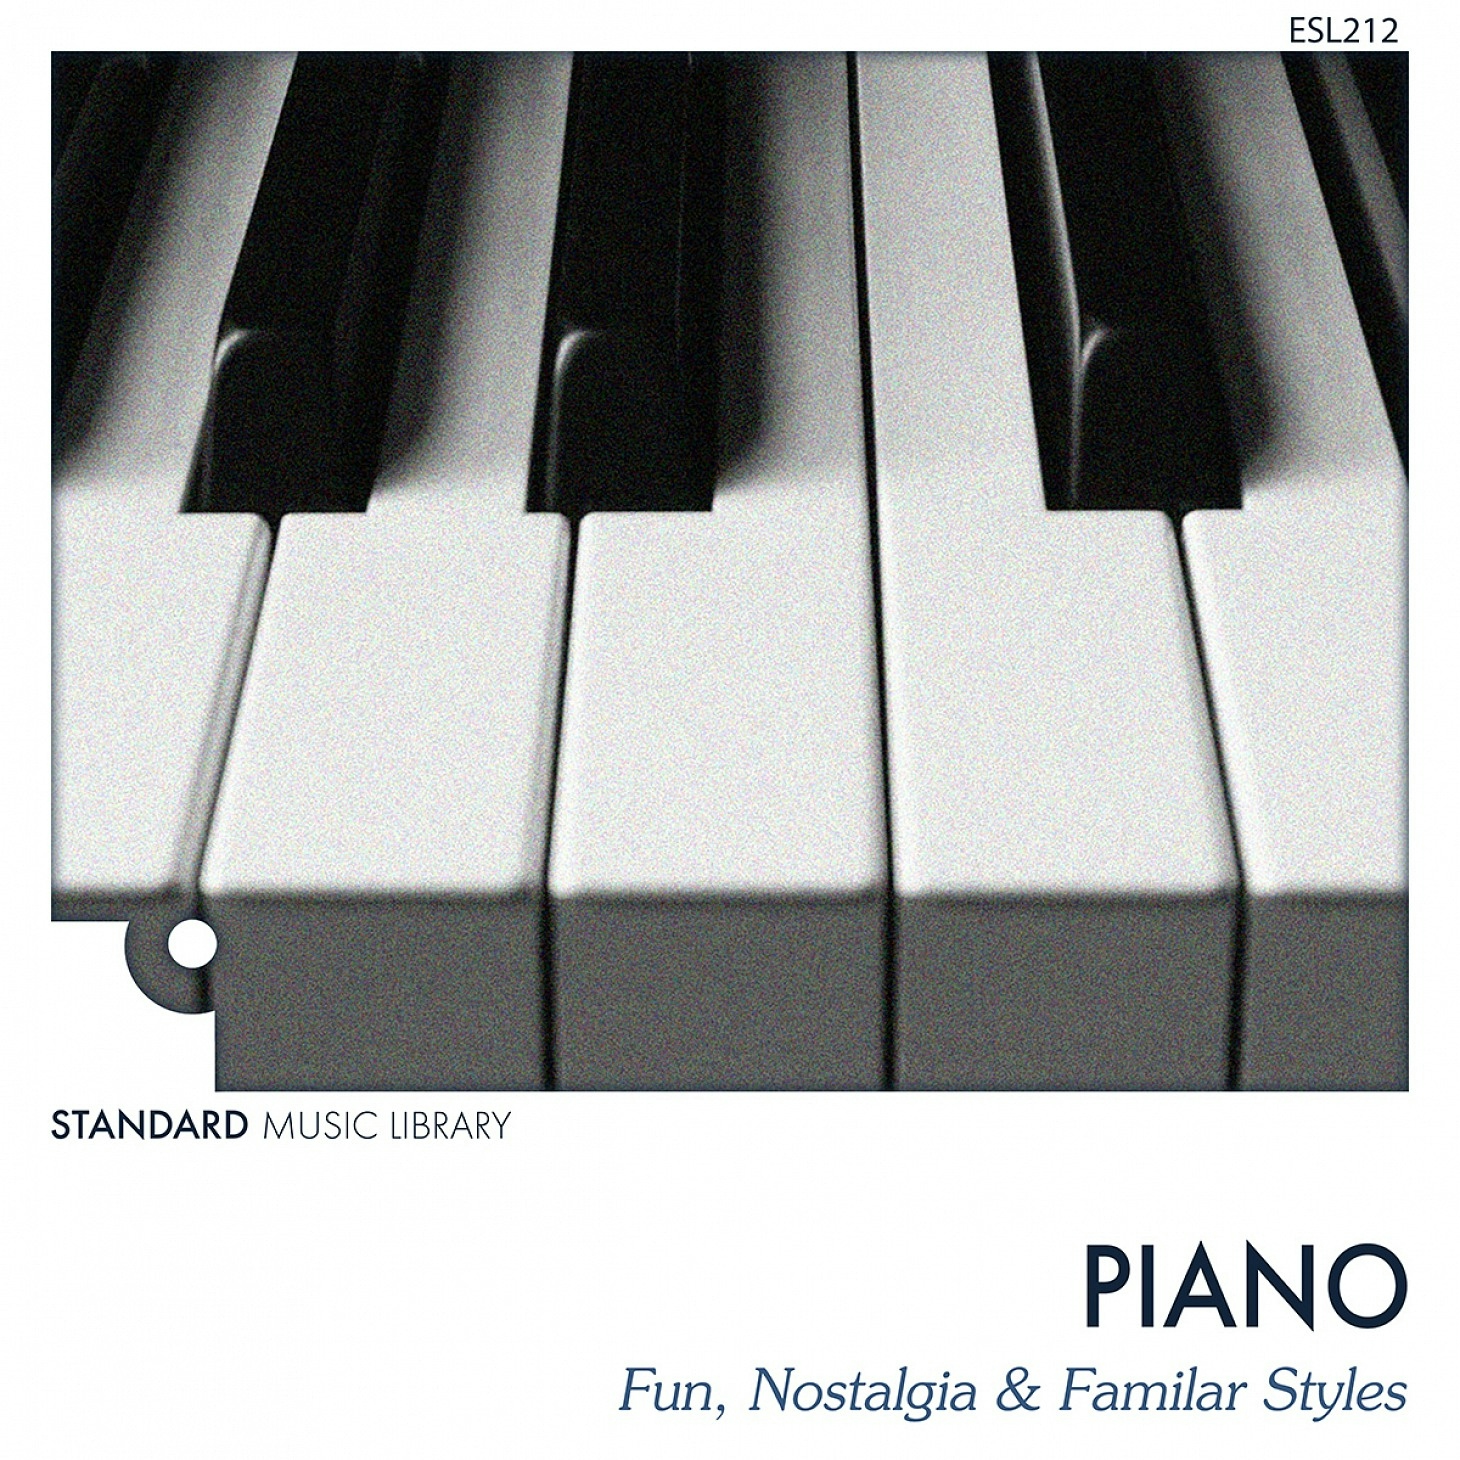 Piano - Fun, Nostalgia & Familiar Styles